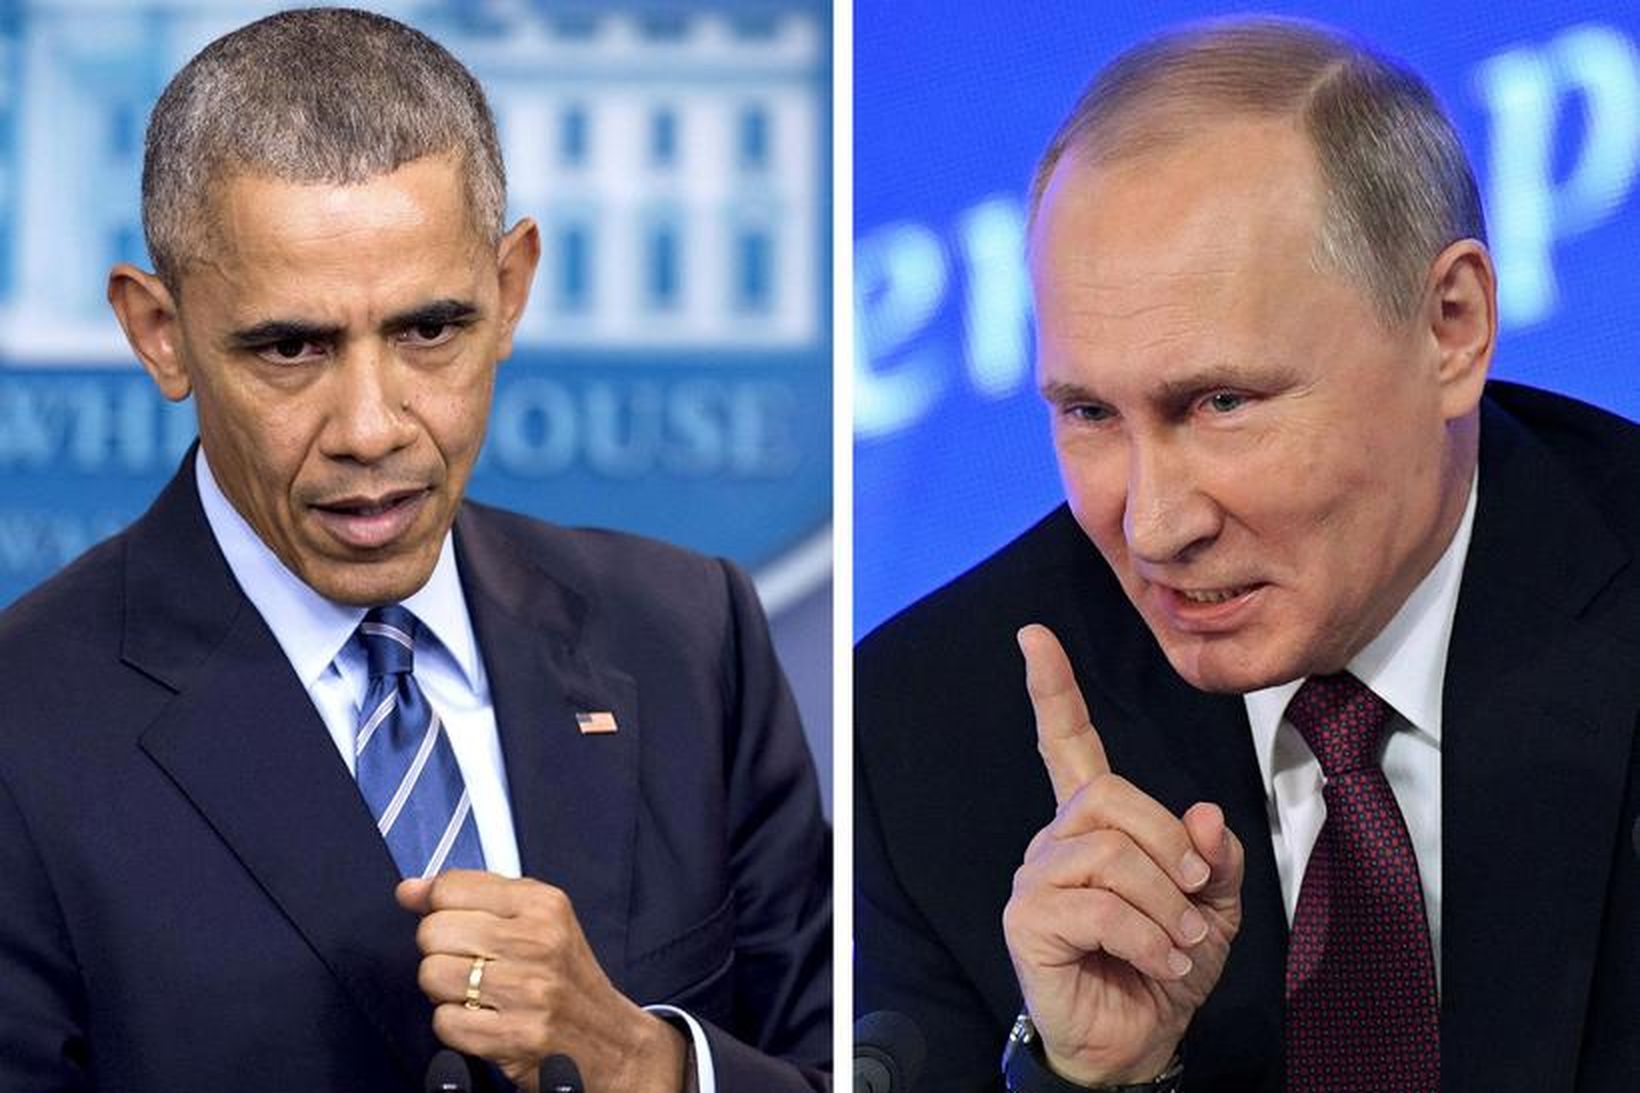 Barak Obama, forseti Bandaríkjanna og Vladimir Putin, forseti Rússlands.